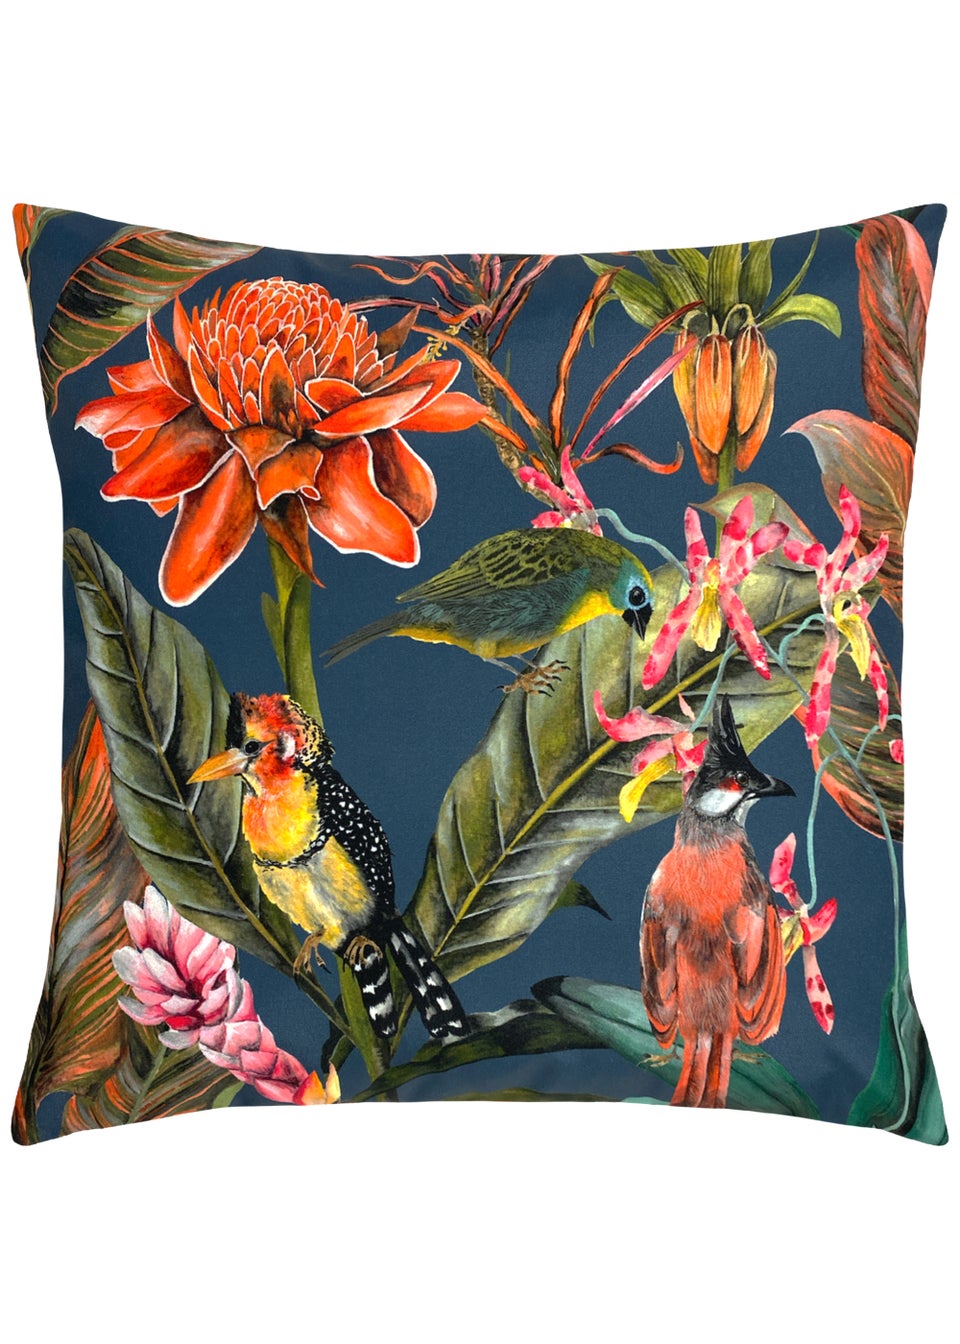 Evans Lichfield Exotics Outdoor Filled Cushion (43cm x 43cm x 8cm)